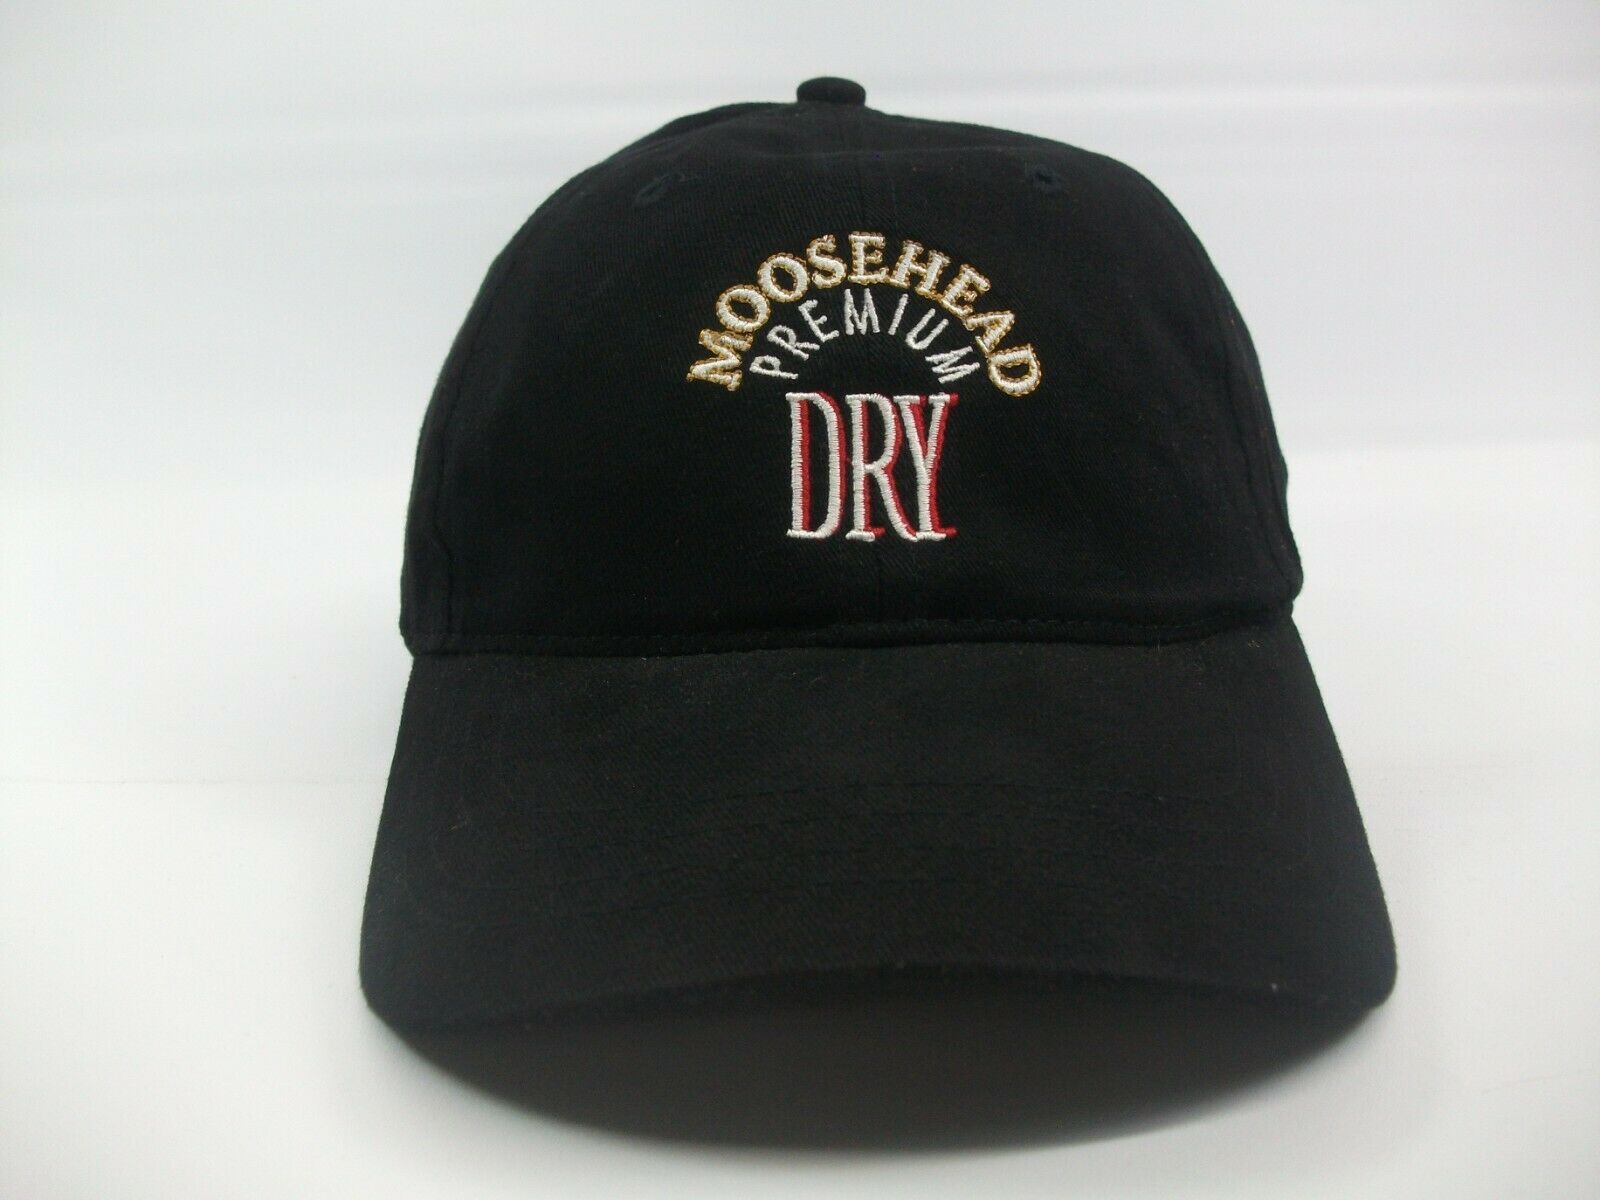 Moosehead Premium Dry Beer Hat Black Hook Loop Baseball Cap - Men's ...